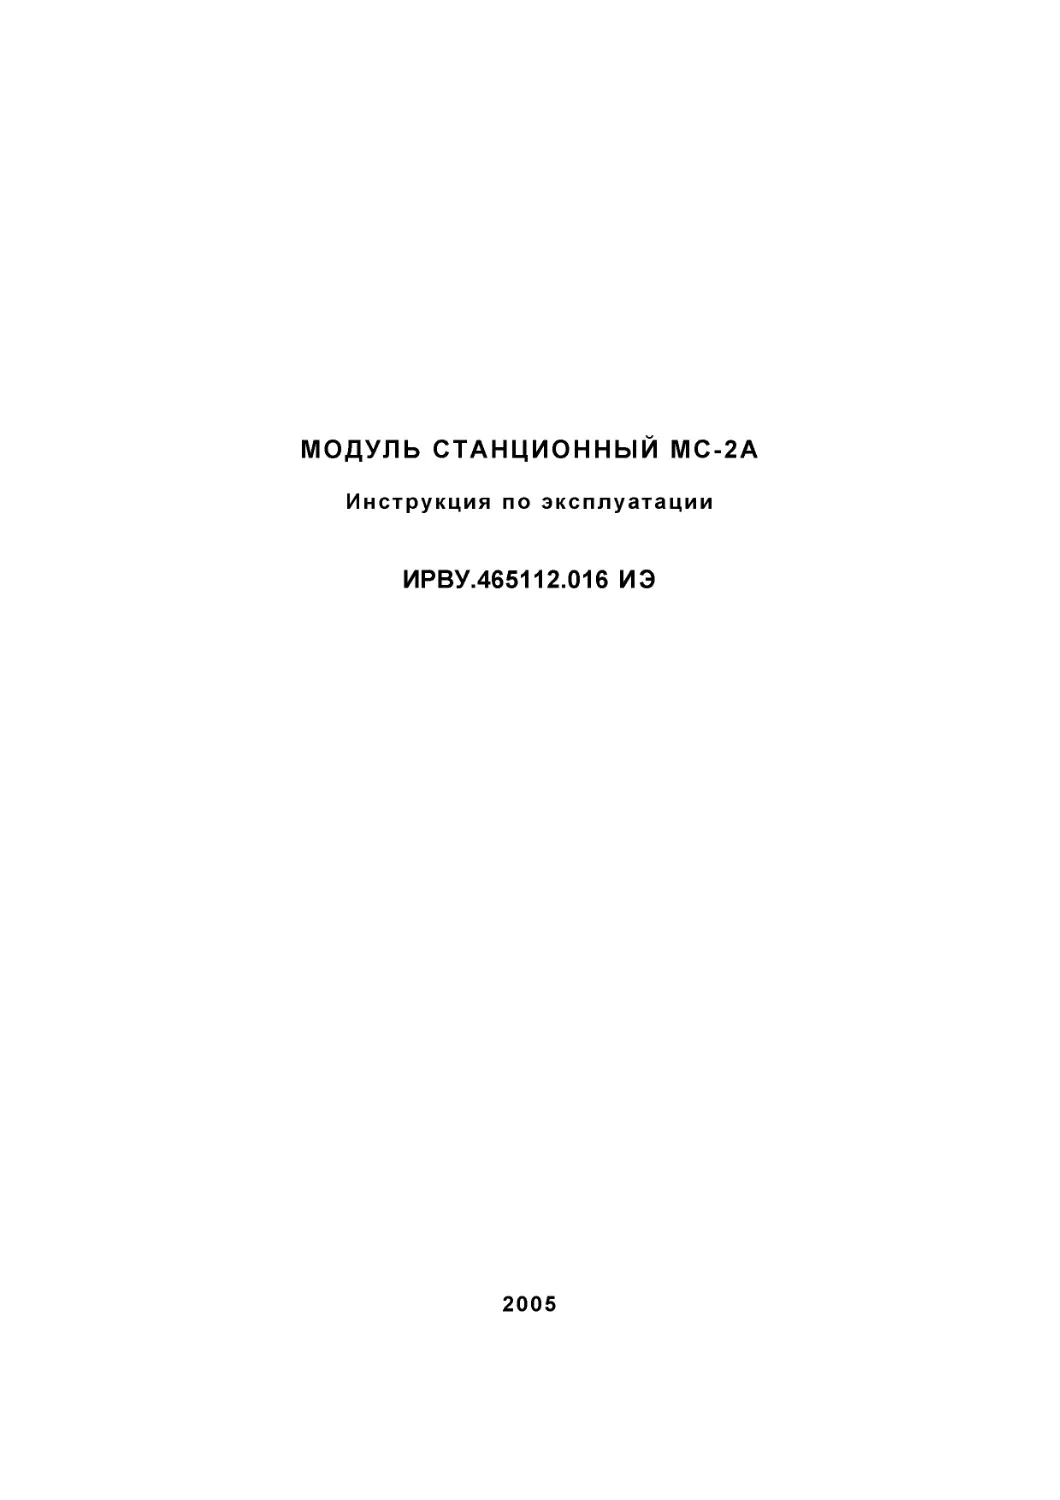 ms2a-ie-00.pdf